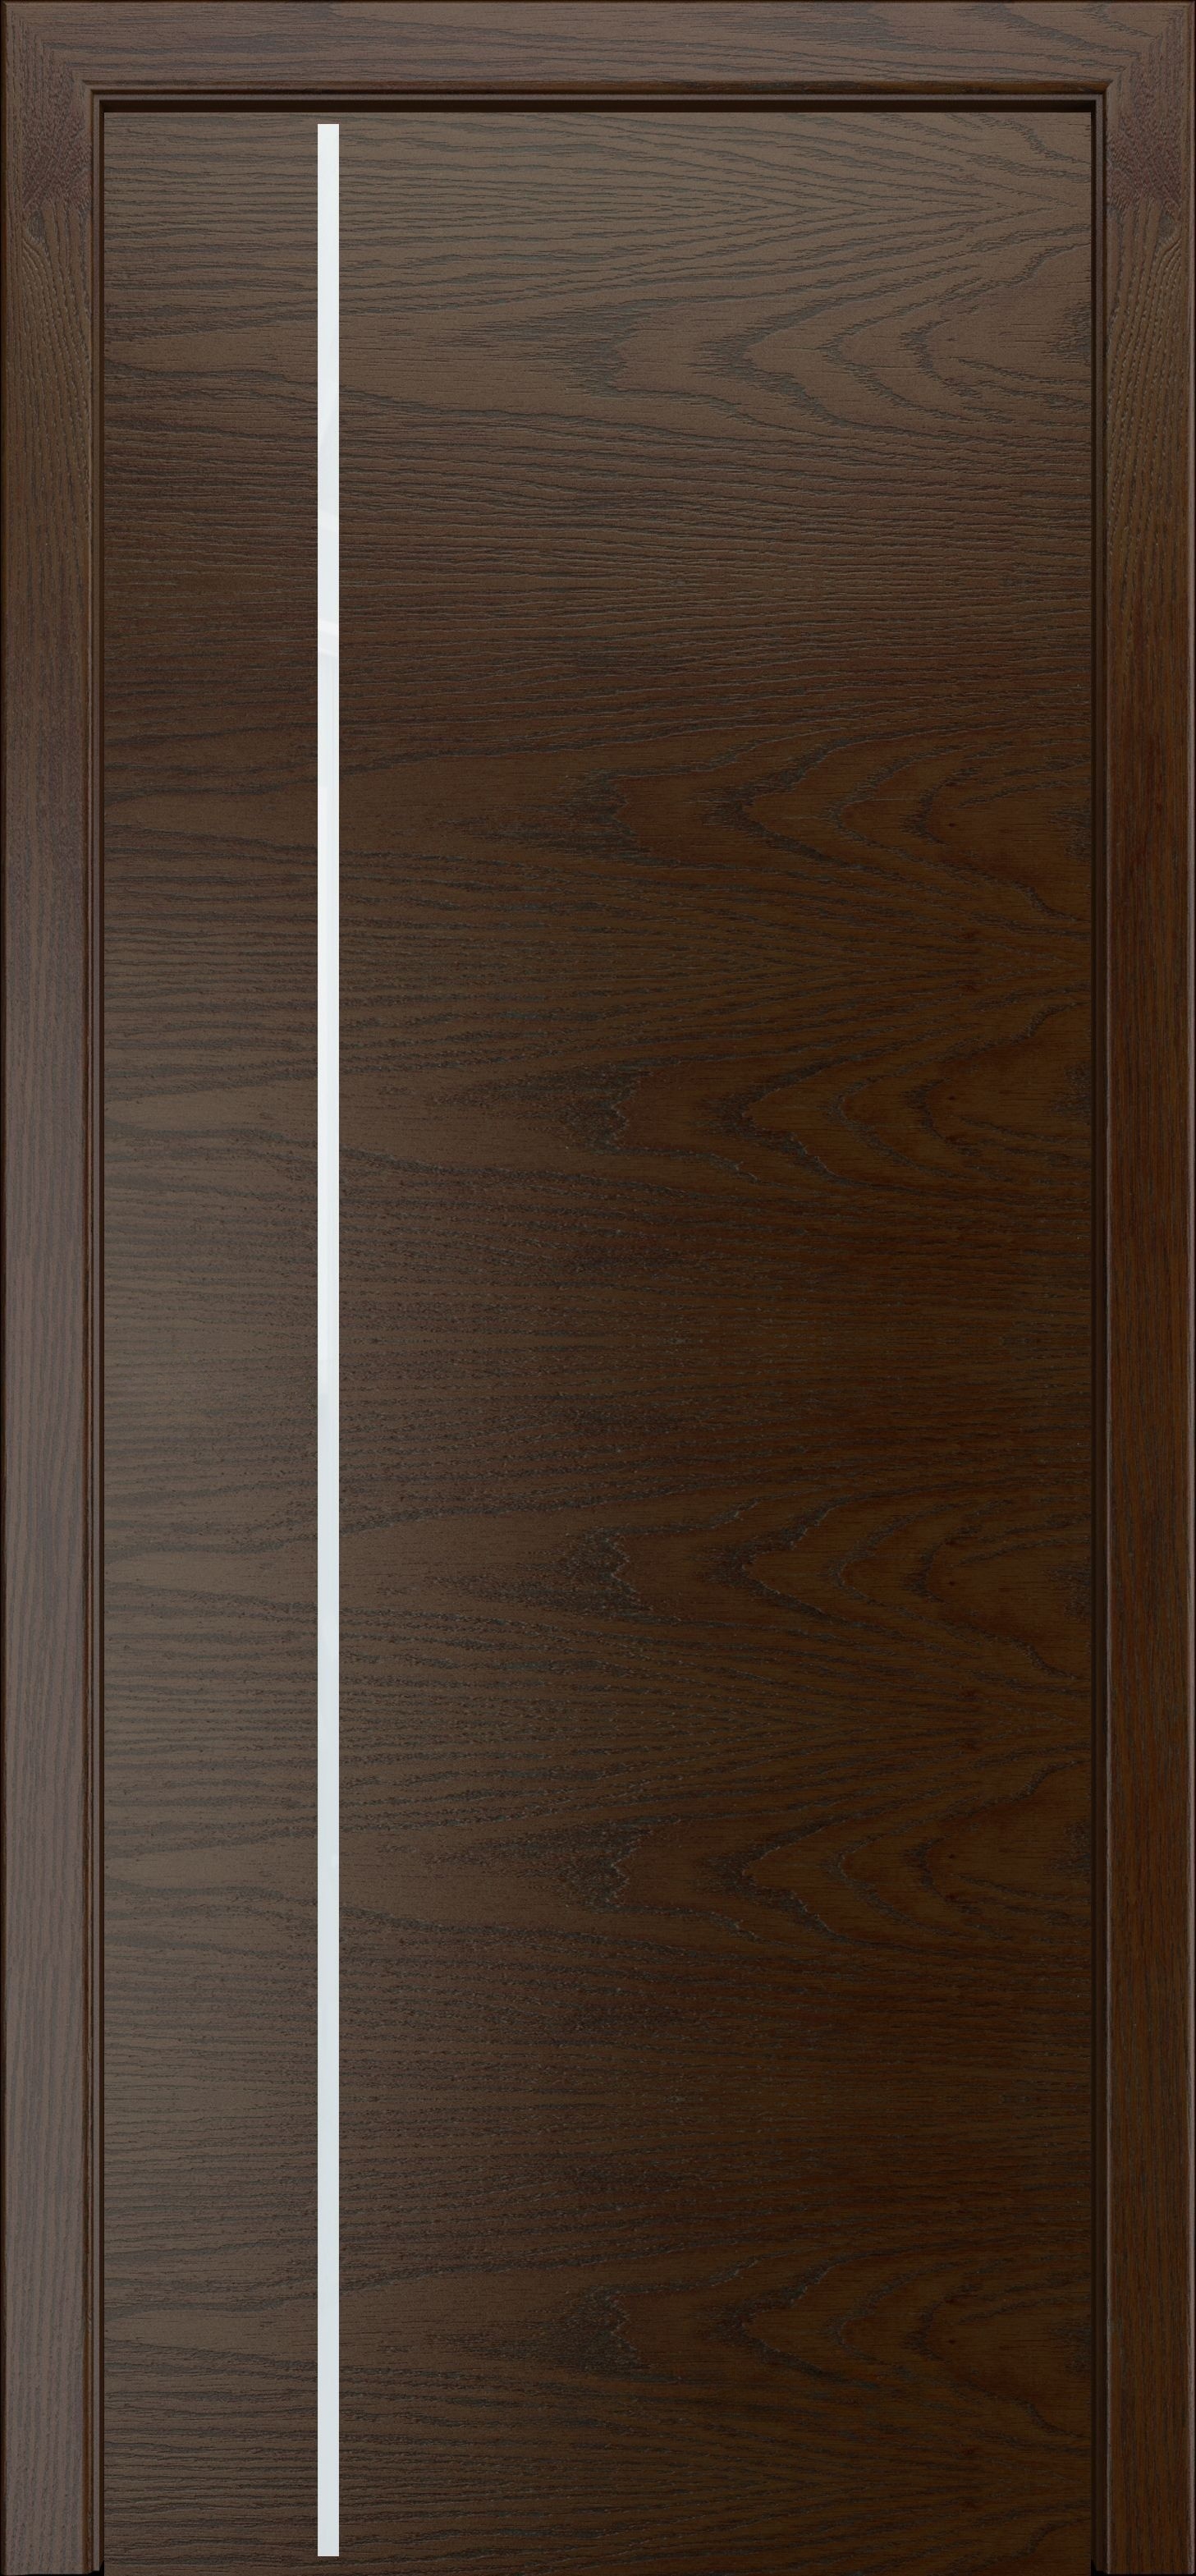 Межкомнатная дверь «Камелия К-10». Вид отделки Тон 10 вертикальный шпон Cтандартный наличник